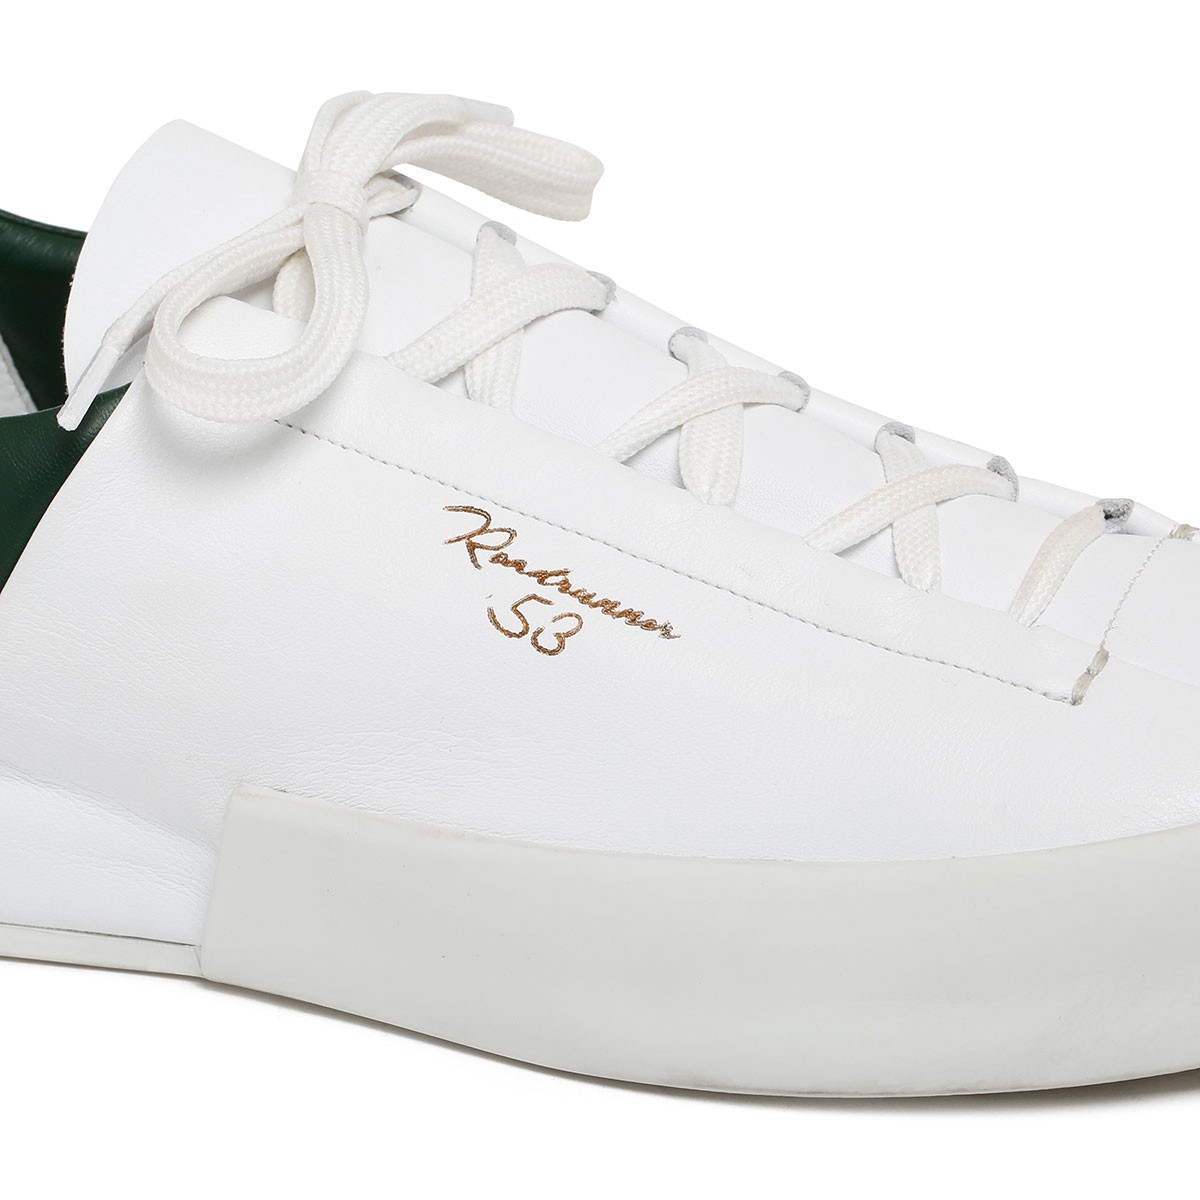 Sneakers Durante bianco e verde